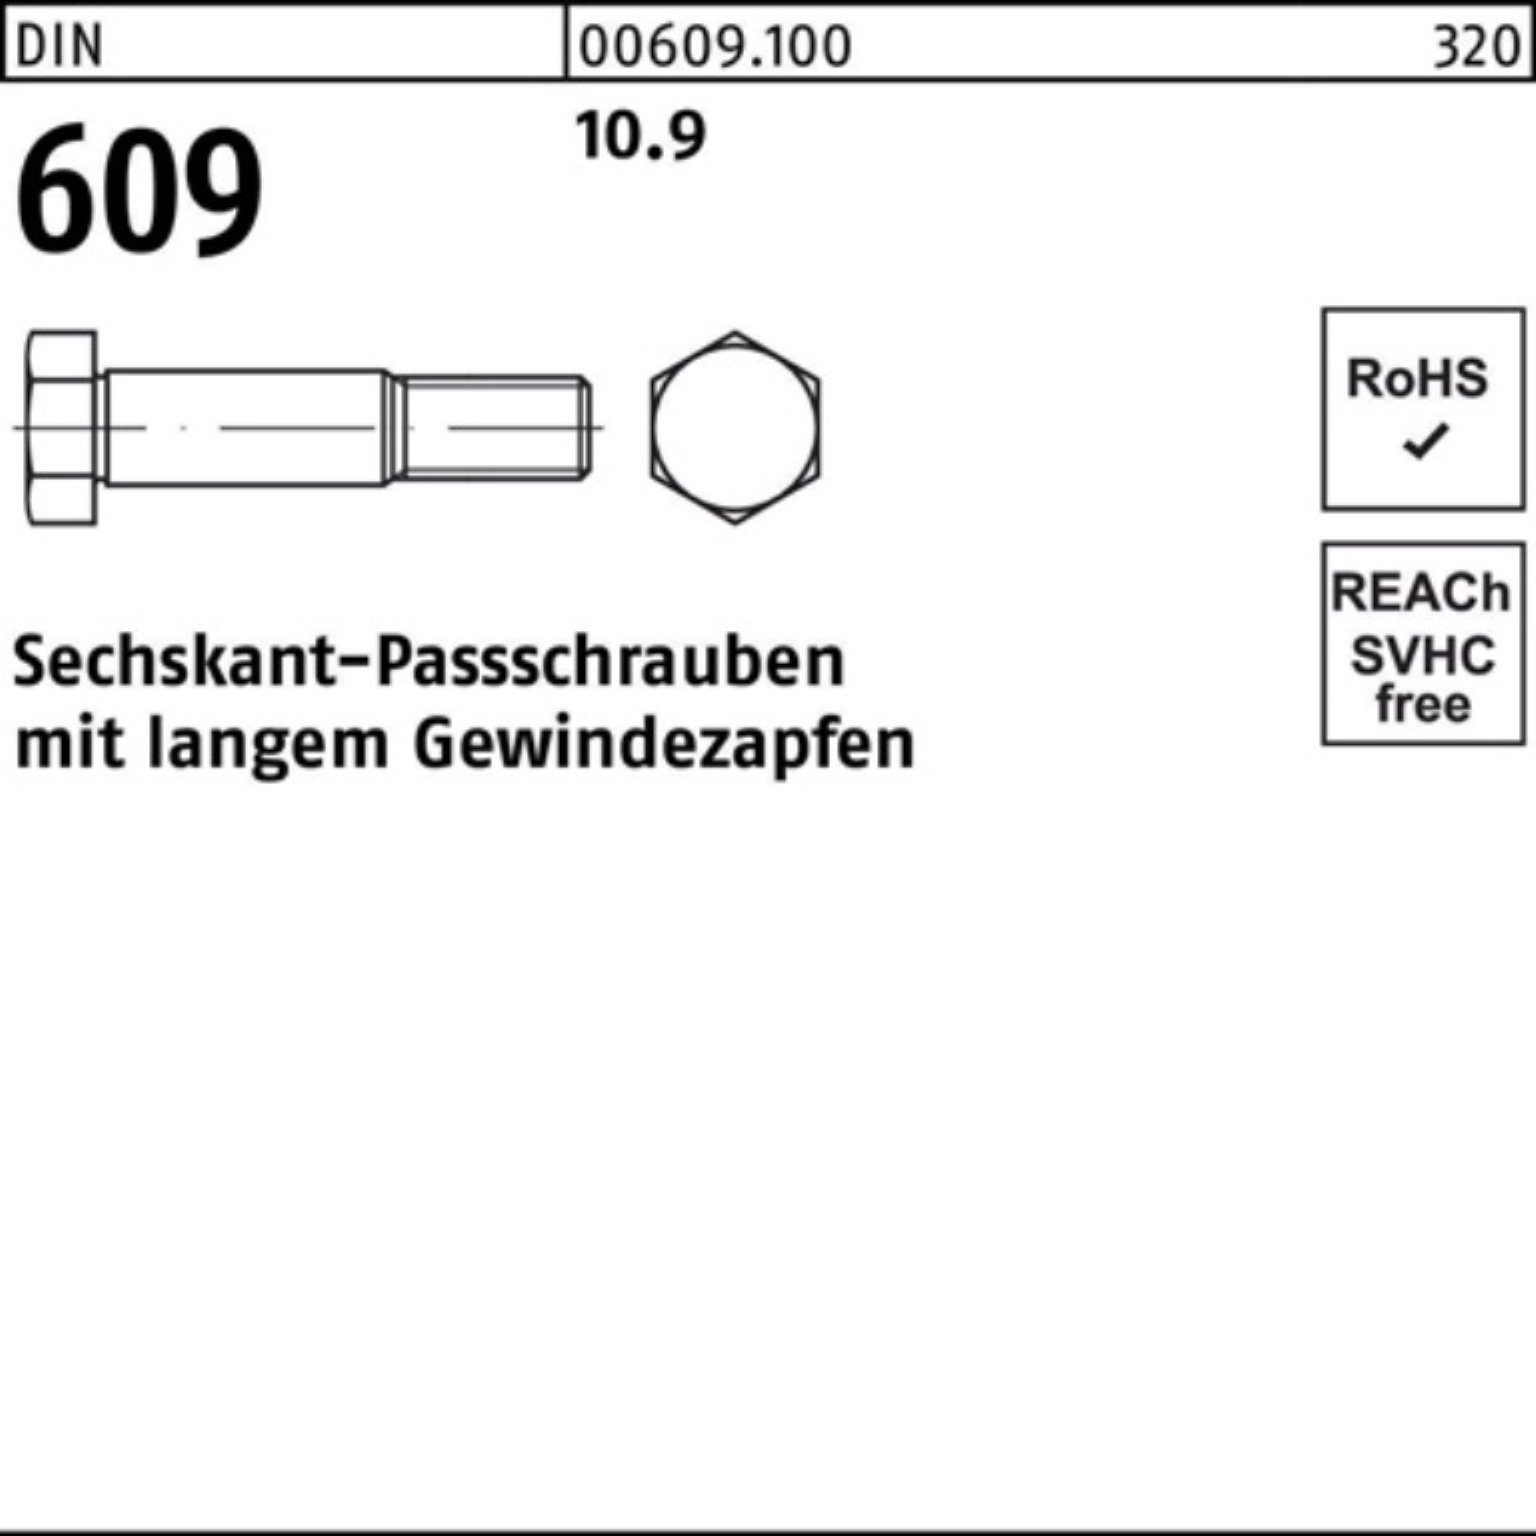 609 Sechskantpassschraube Reyher 30 Gewindezapfen DIN Pack Schraube 100er M10x langem